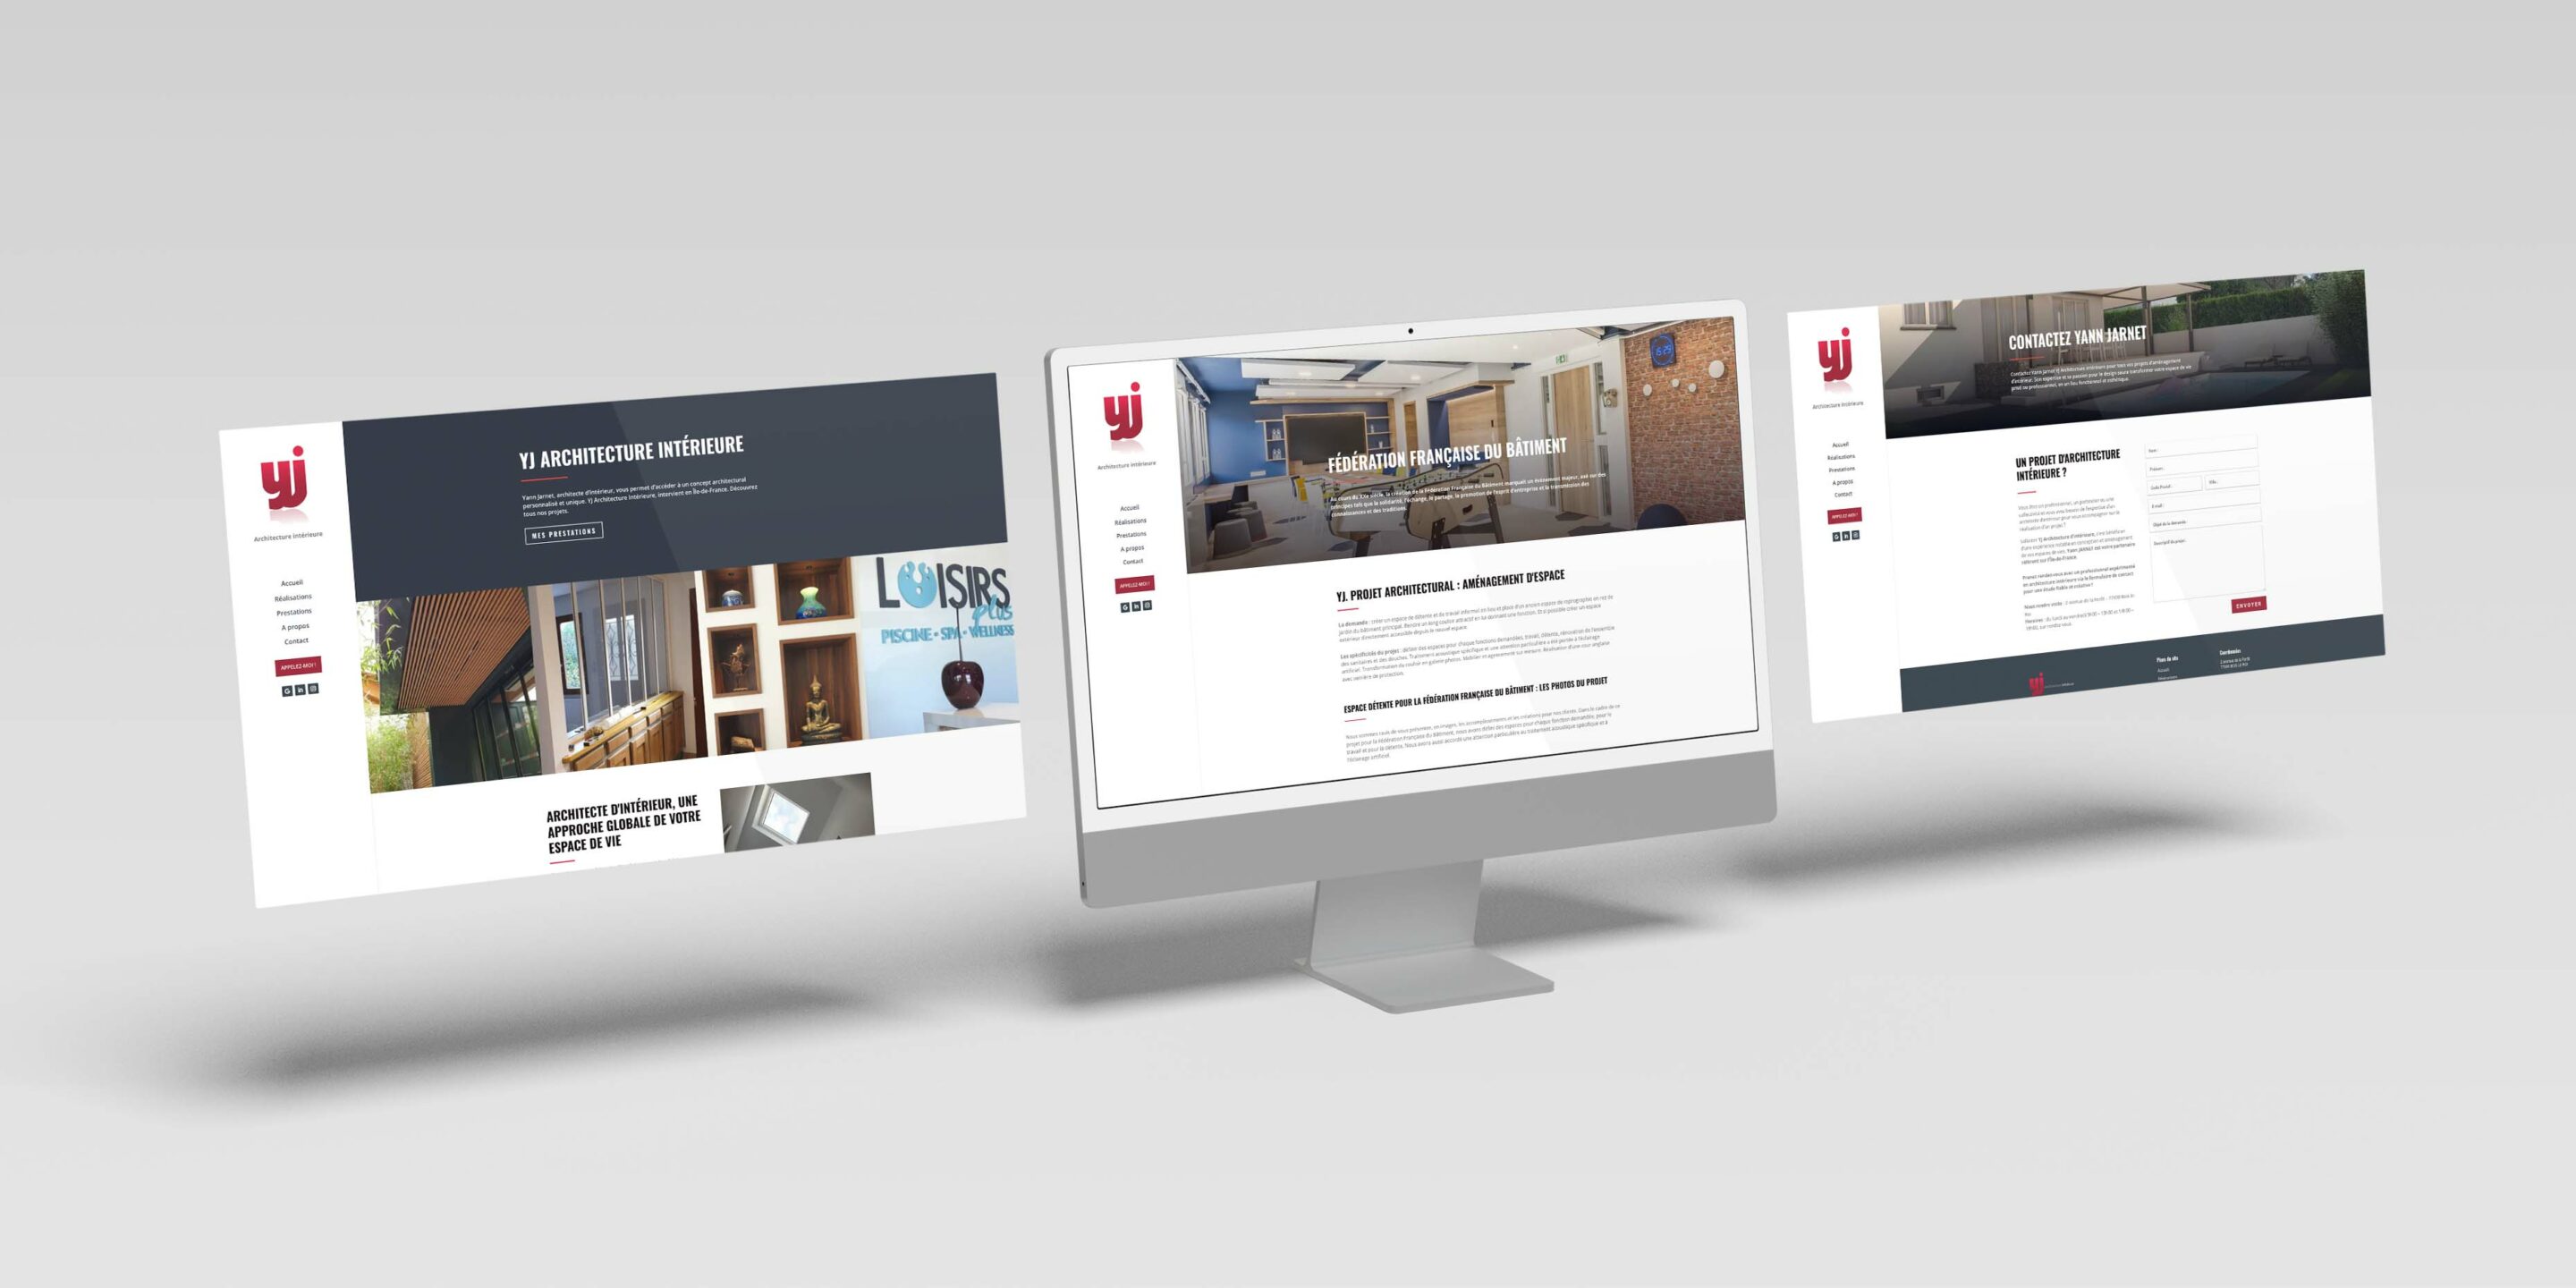 YJ Architecture intérieur : Présentation des pages d'accueil, projet et contact du site internet